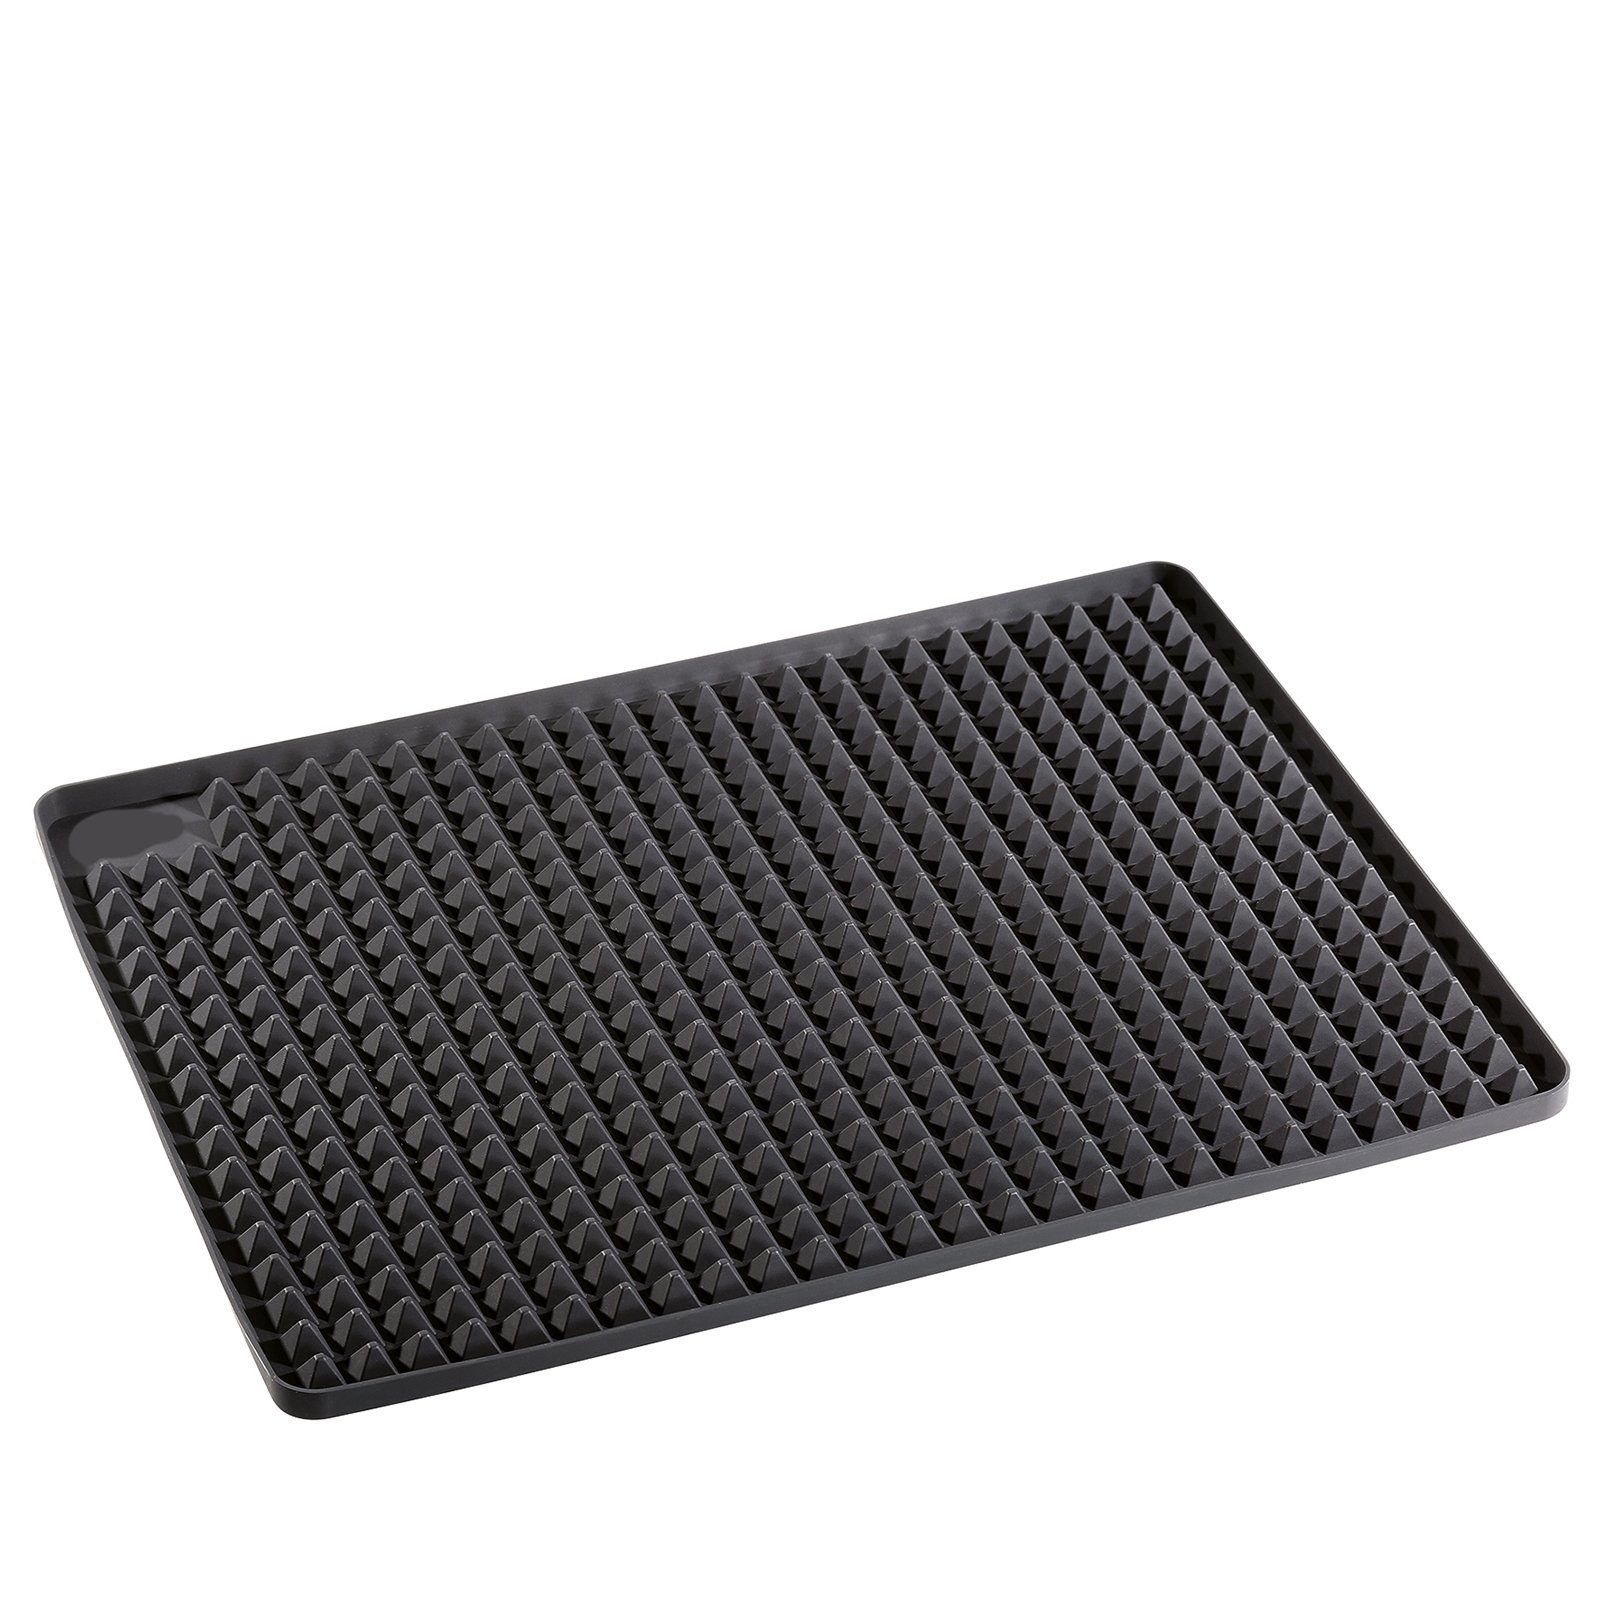 Küchenprofi Backmatte Backofenmatte schwarz rechteckig, Silikon, gleichmäßige Wärmeverteilung